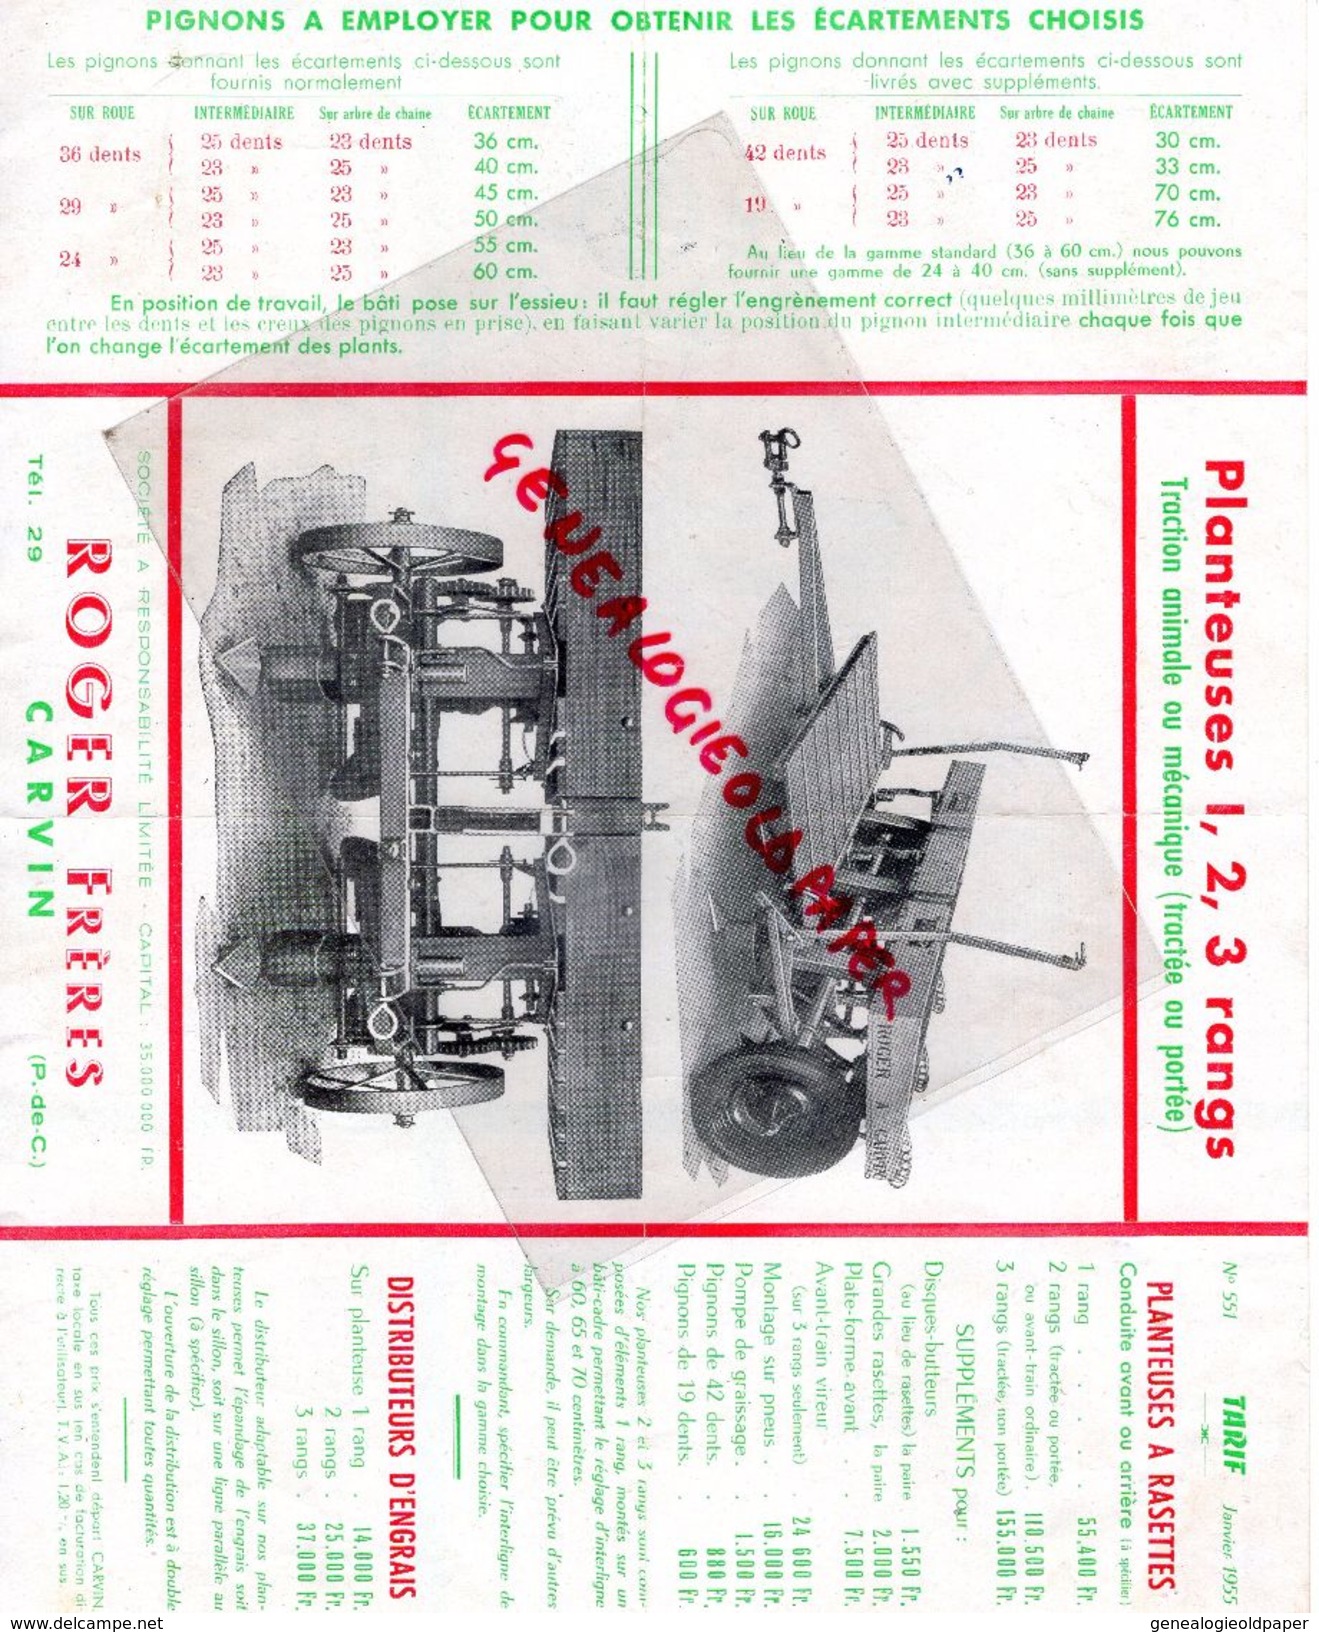 62 - CARVIN - PUBLICITE ROGER FRERES- AGRICULTURE PLANTEUSE TRACTION ANIMALE OU MECANIQUE-MACHINE AGRICOLE-TARIFS 1955 - Landwirtschaft